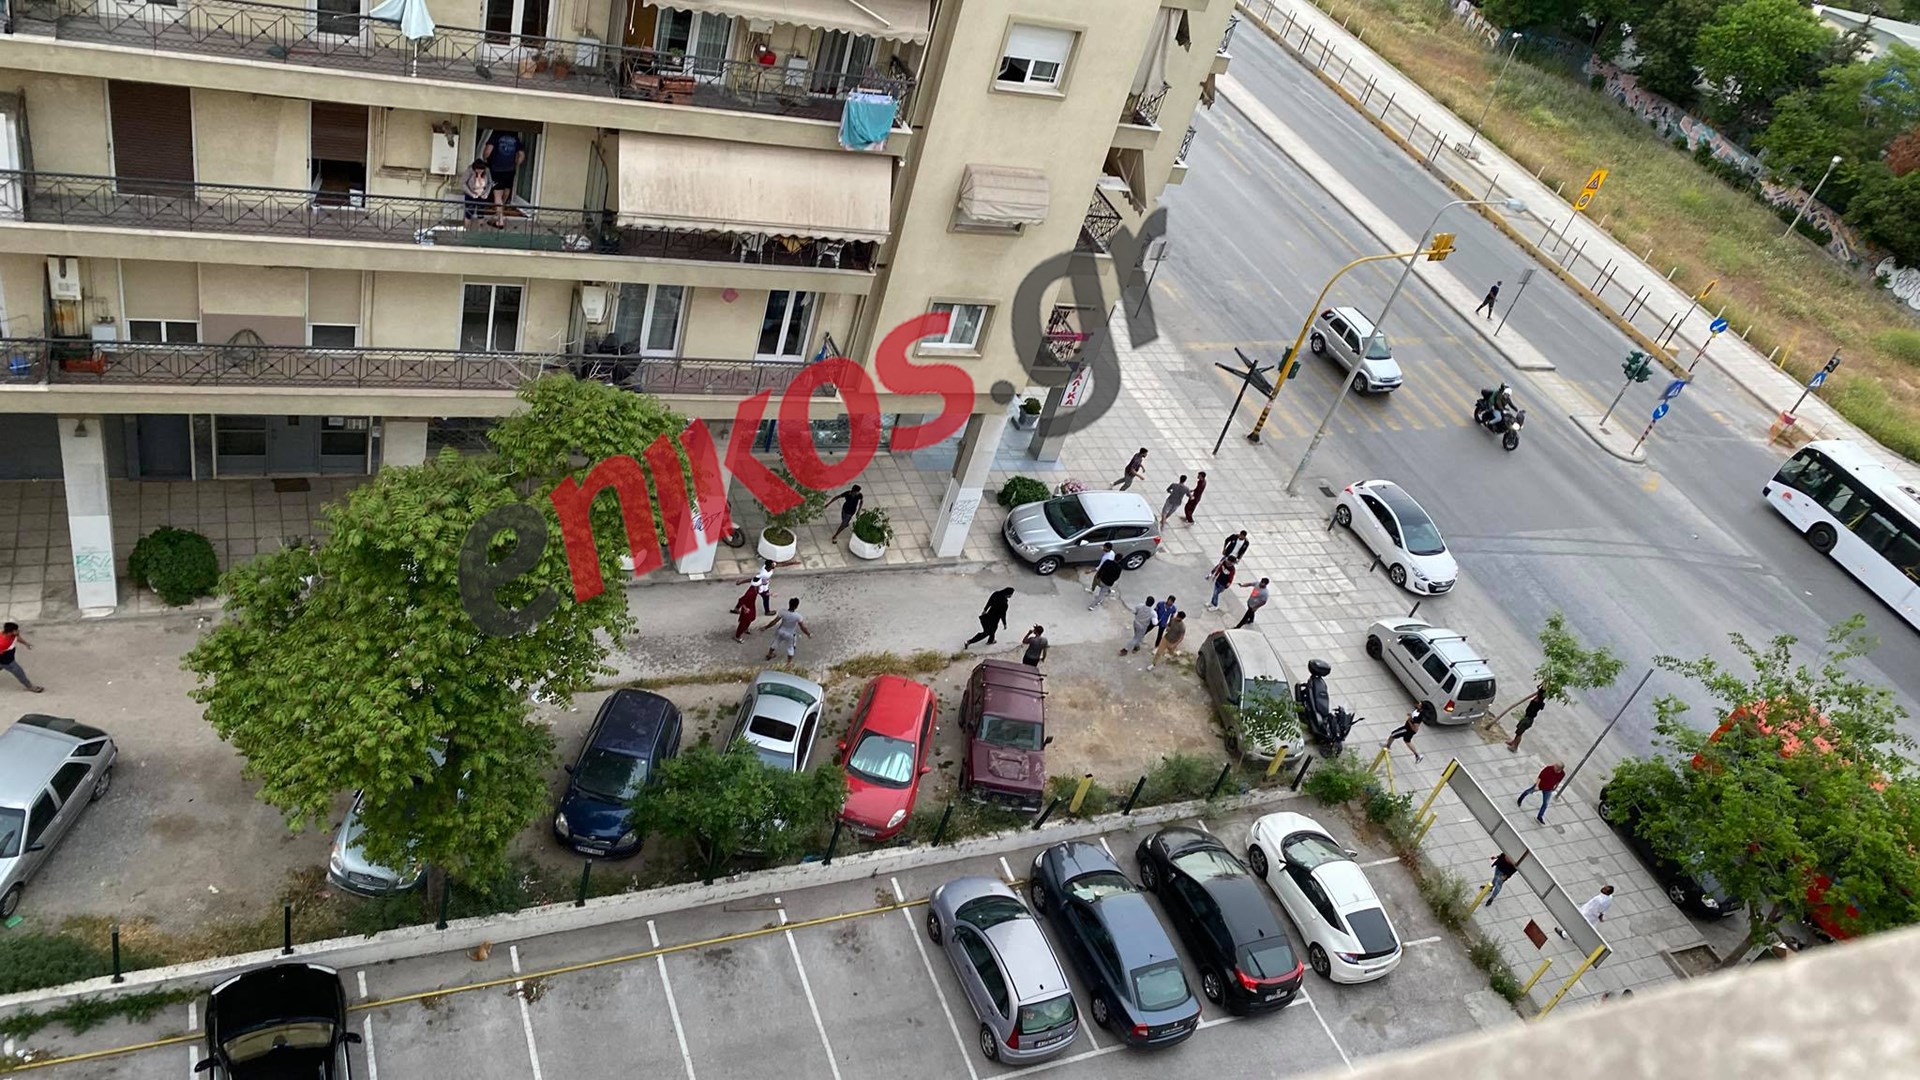 Θεσσαλονίκη: Αιματηρή συμπλοκή αλλοδαπών στην περιοχή του Σιδηροδρομικού σταθμού – ΒΙΝΤΕΟ & ΦΩΤΟ